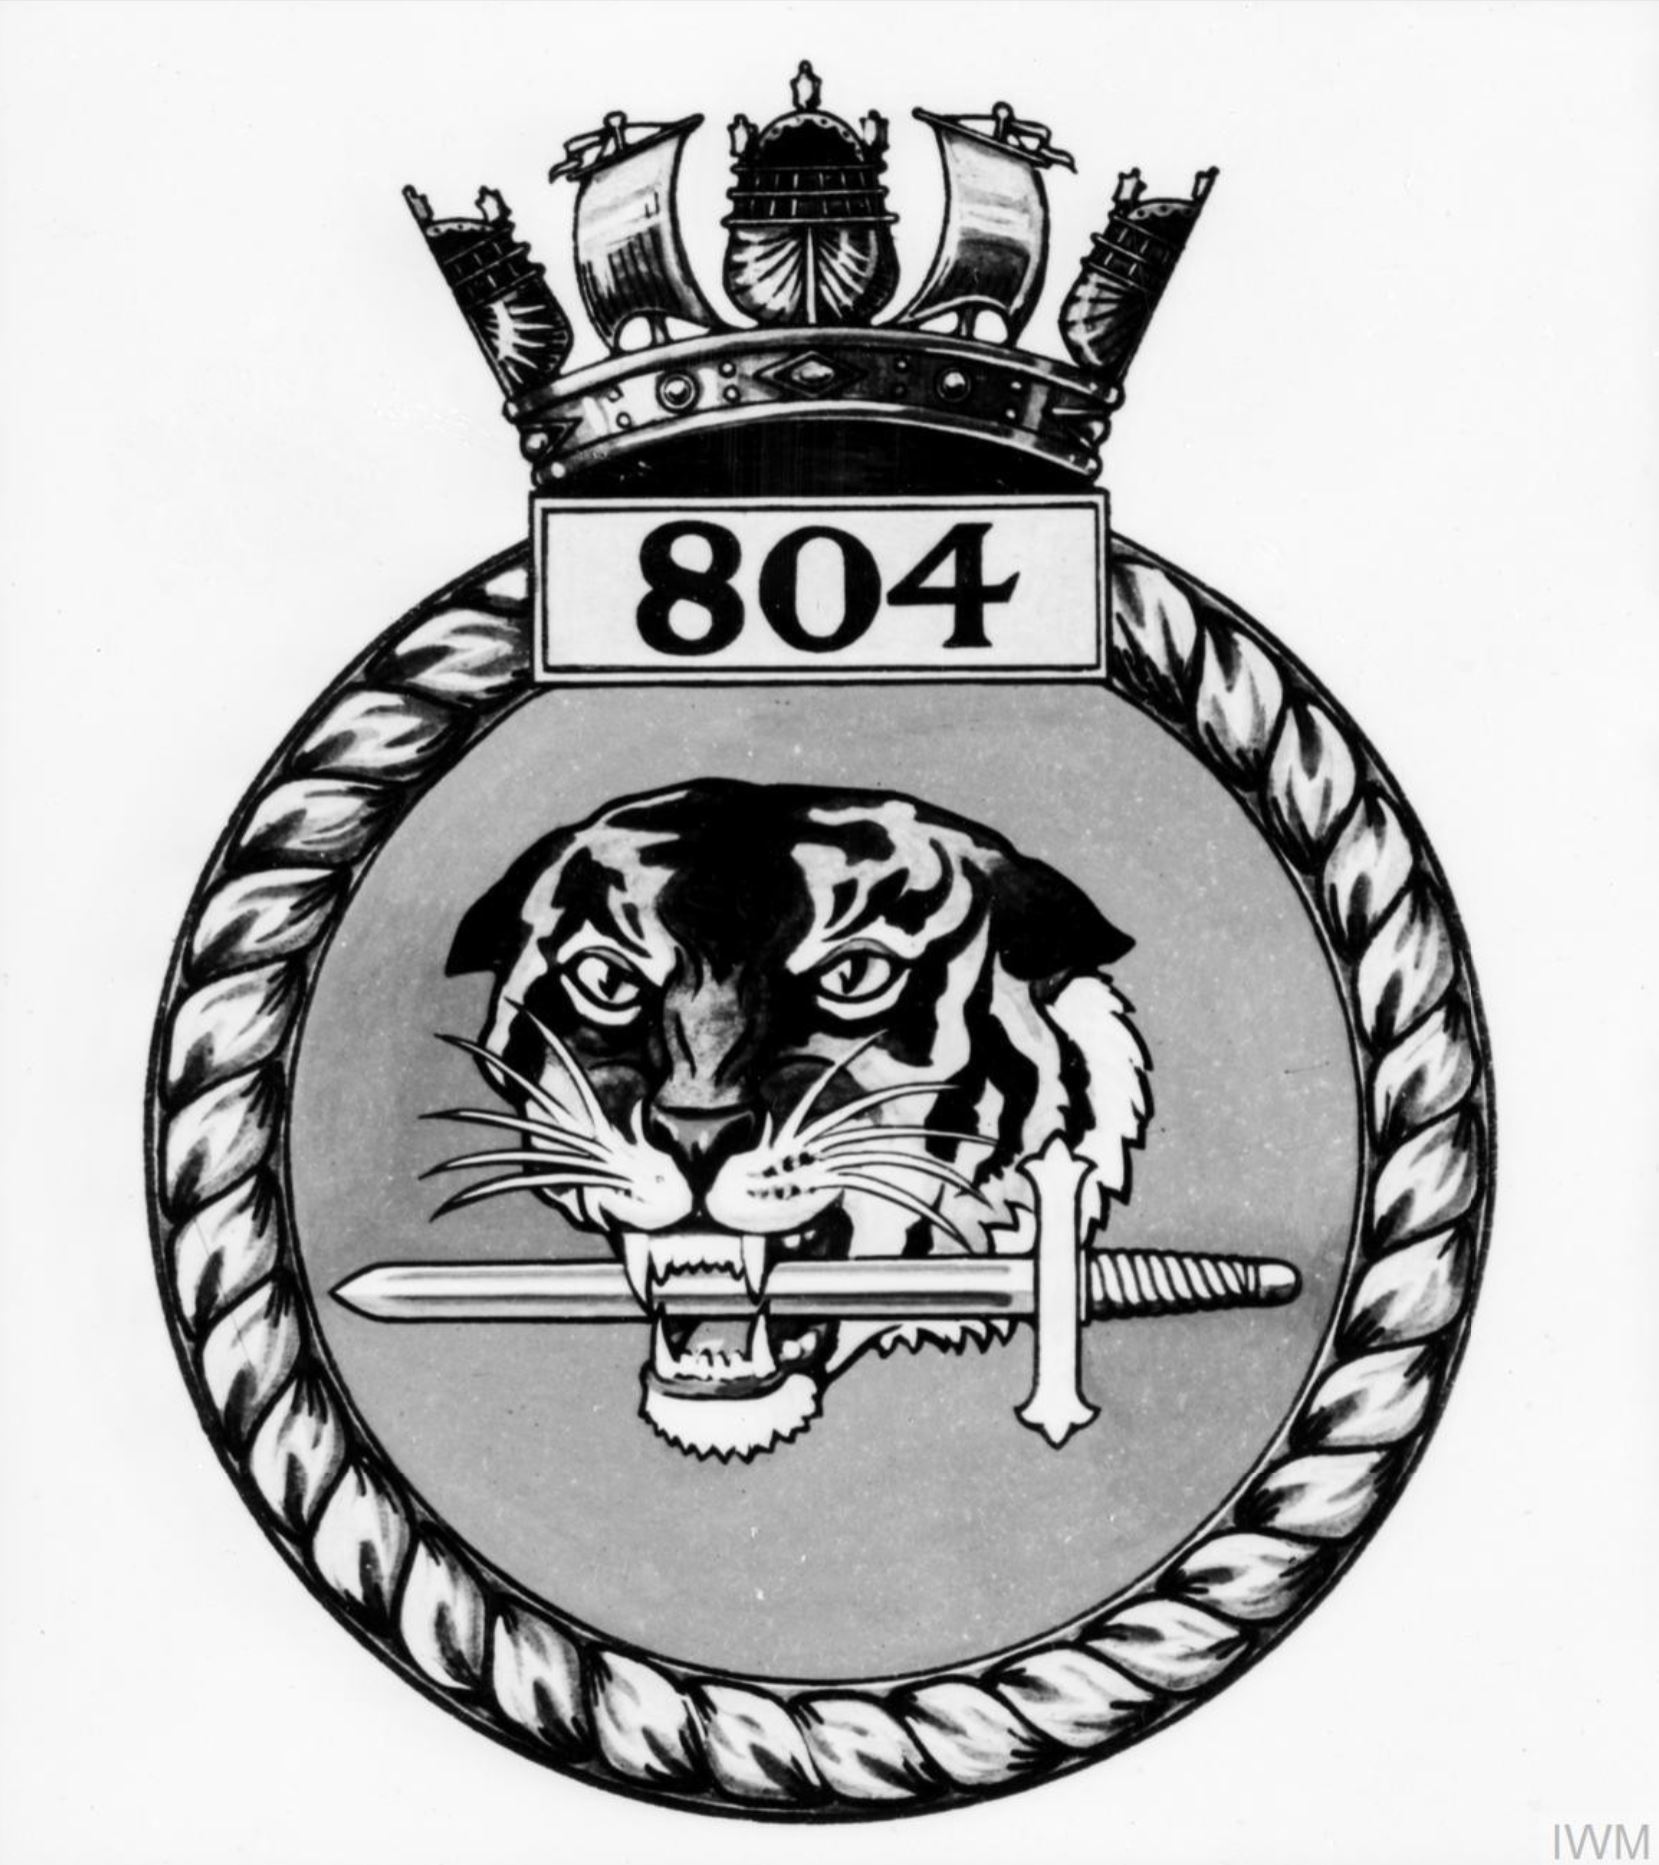 Fleet Air Arm crest of 804 Squadron IWM A26775